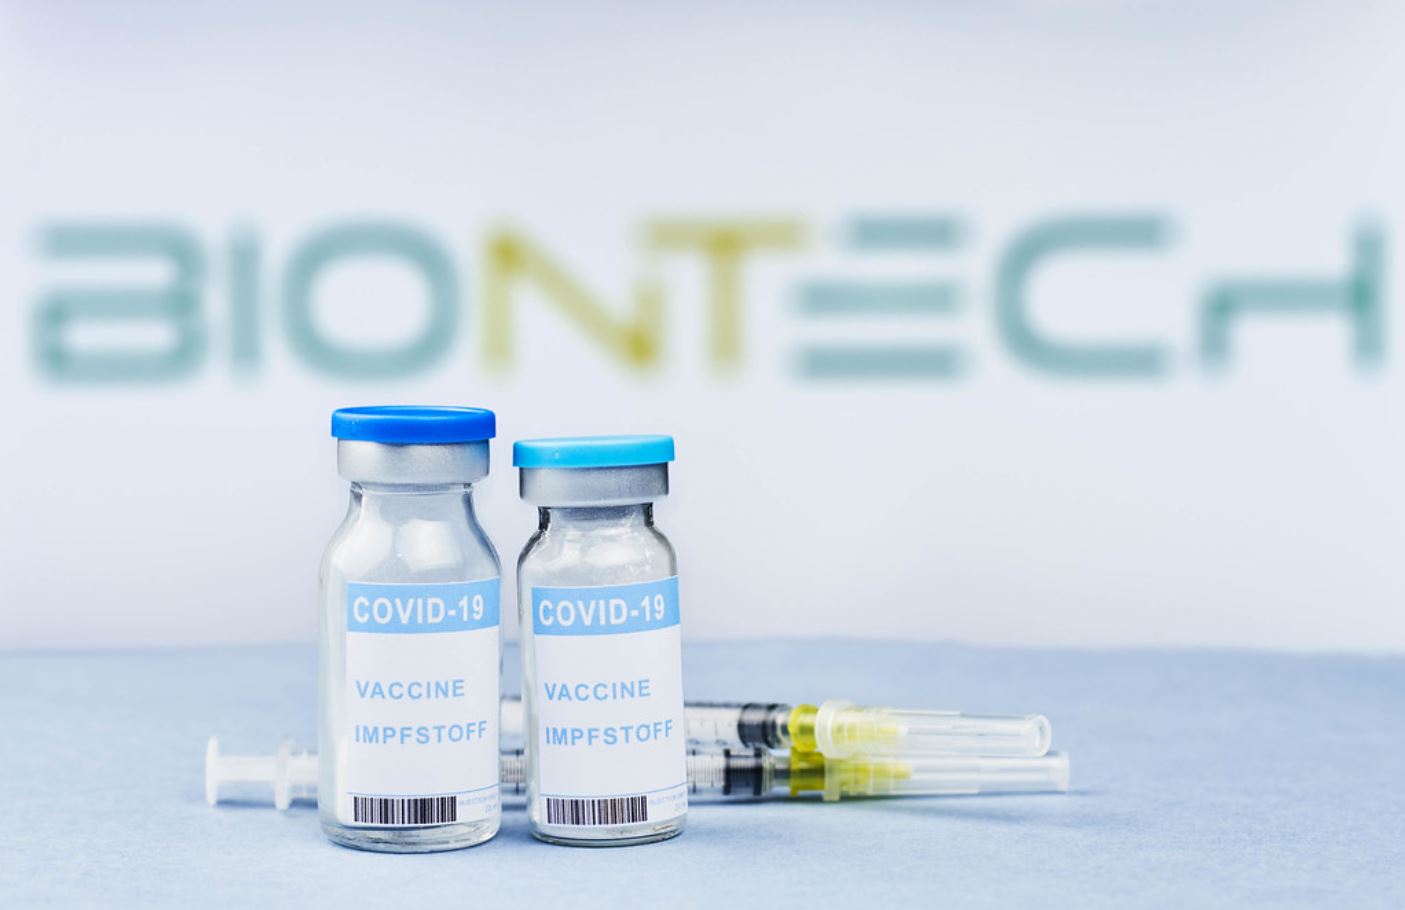 ซีอีโอมั่นใจ! BioNTech จะผลิตวัคซีนใหม่เพื่อป้องกันสายพันธุ์โอไมครอนได้